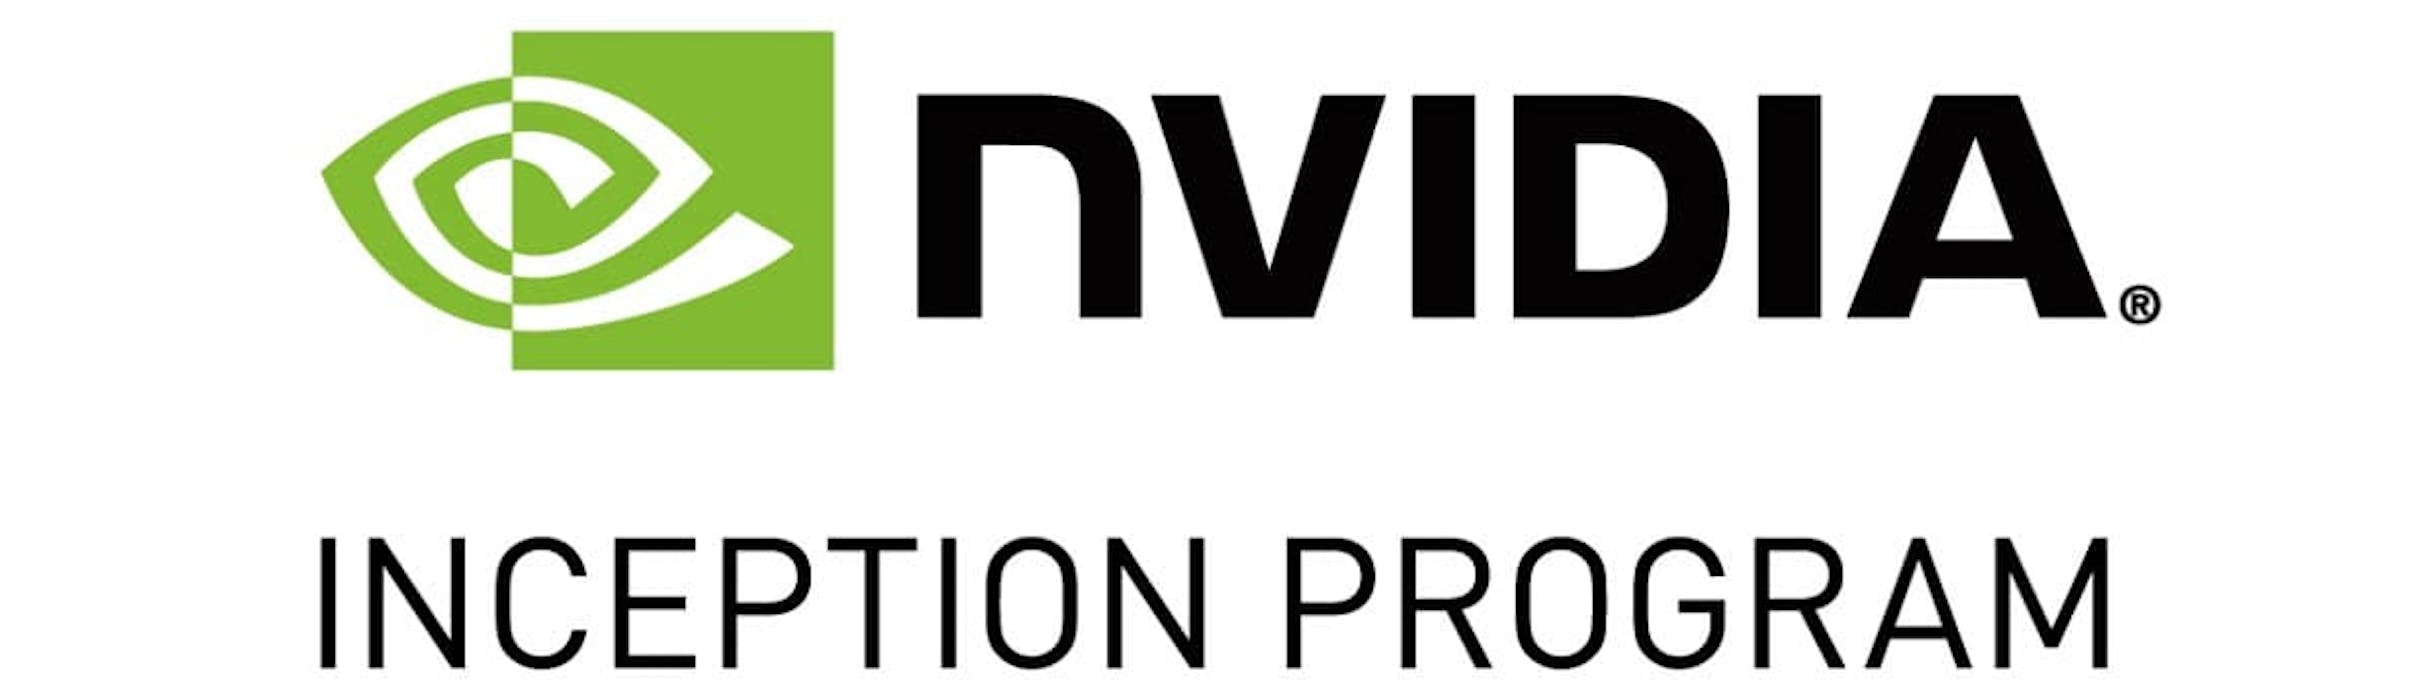 logo for NVIDIA Inception program 